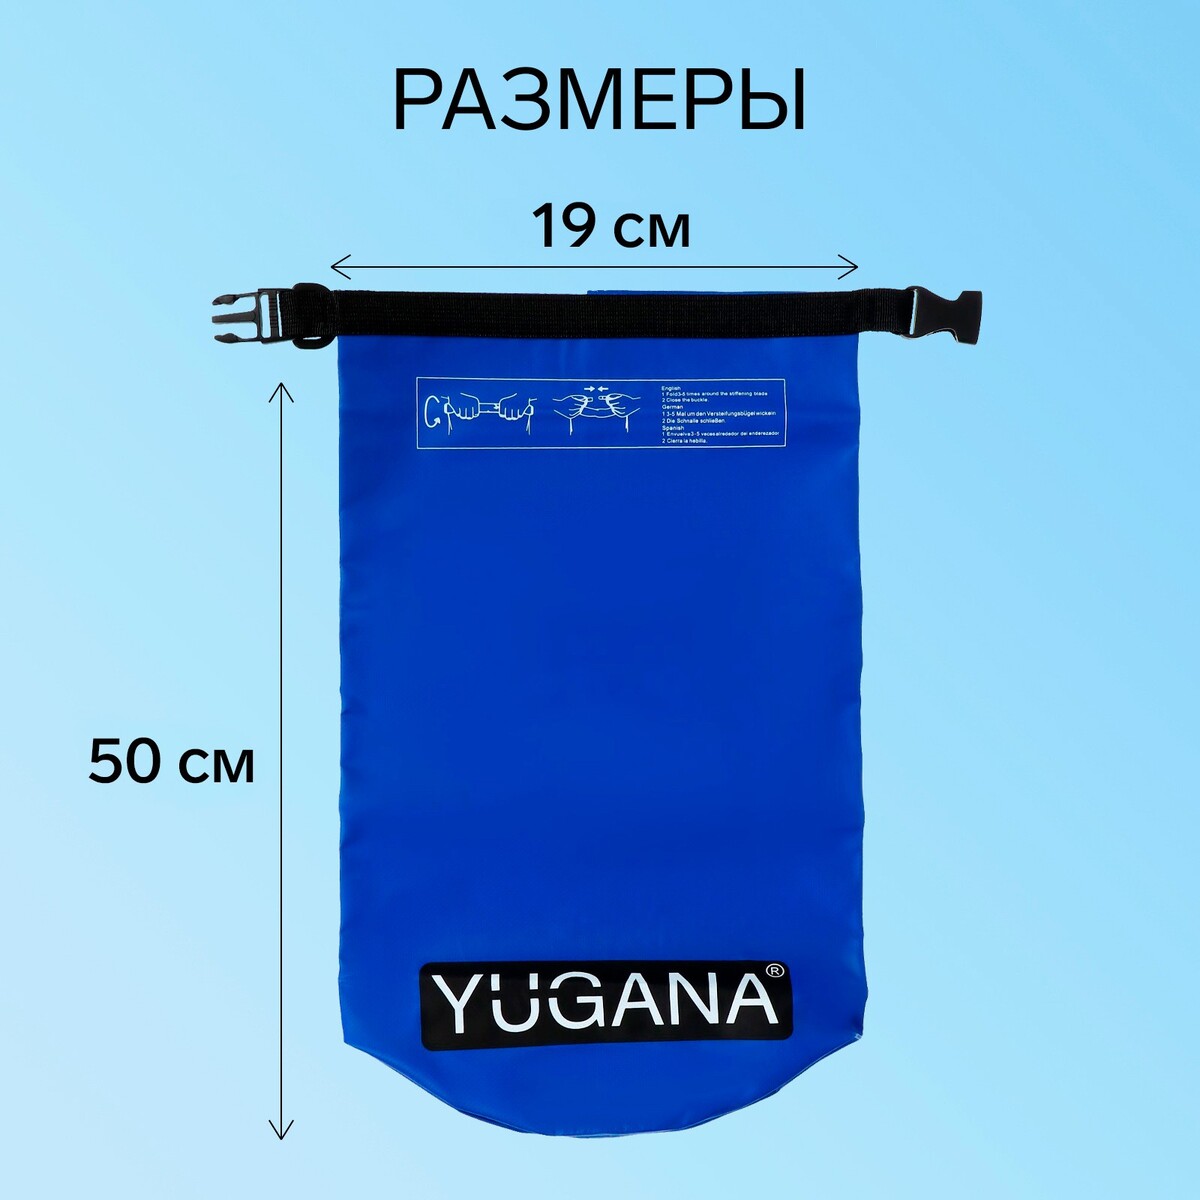 фото Гермомешок yugana, пвх, водонепроницаемый 10 литров, один ремень, синий